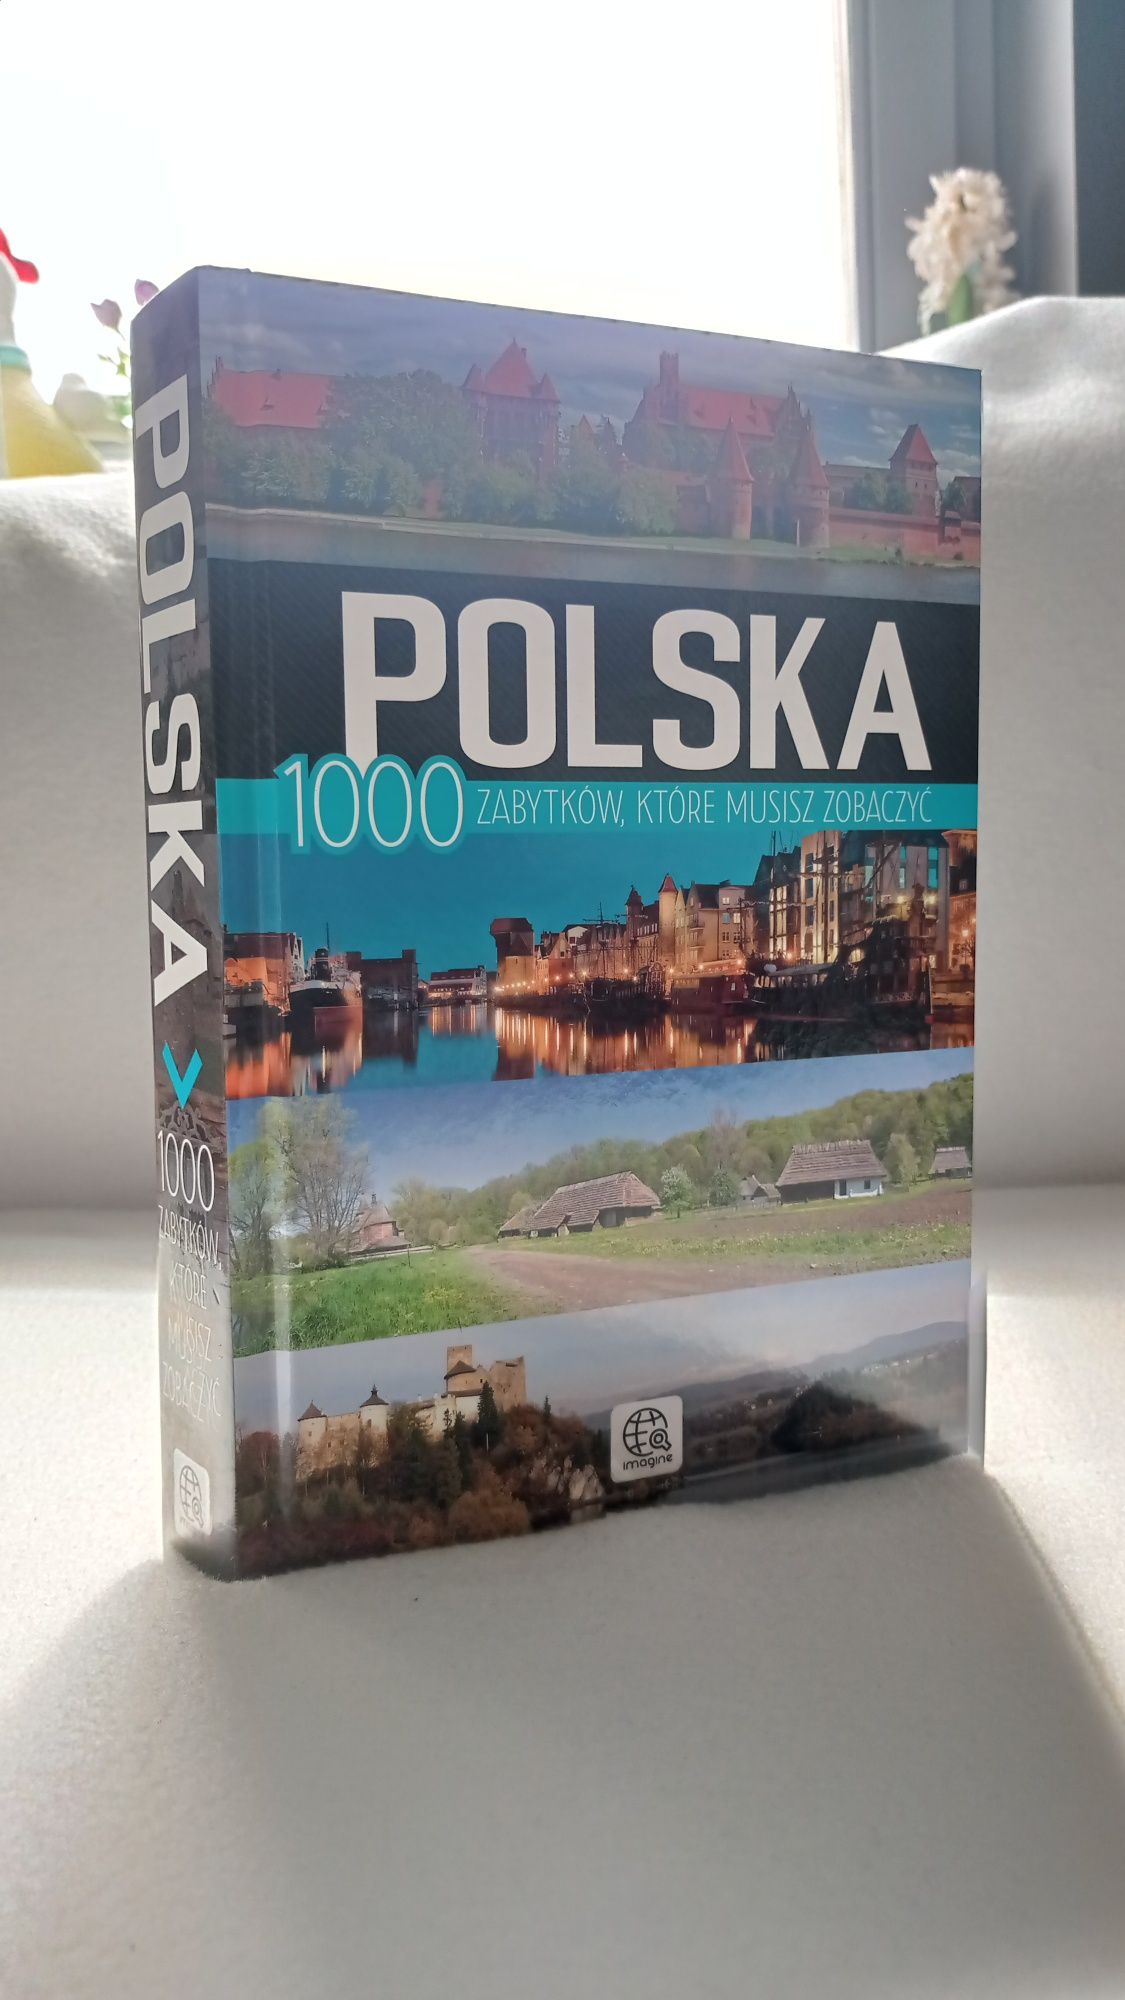 Polska, 1000 zabytków które musisz zobaczyć, historyczna książka